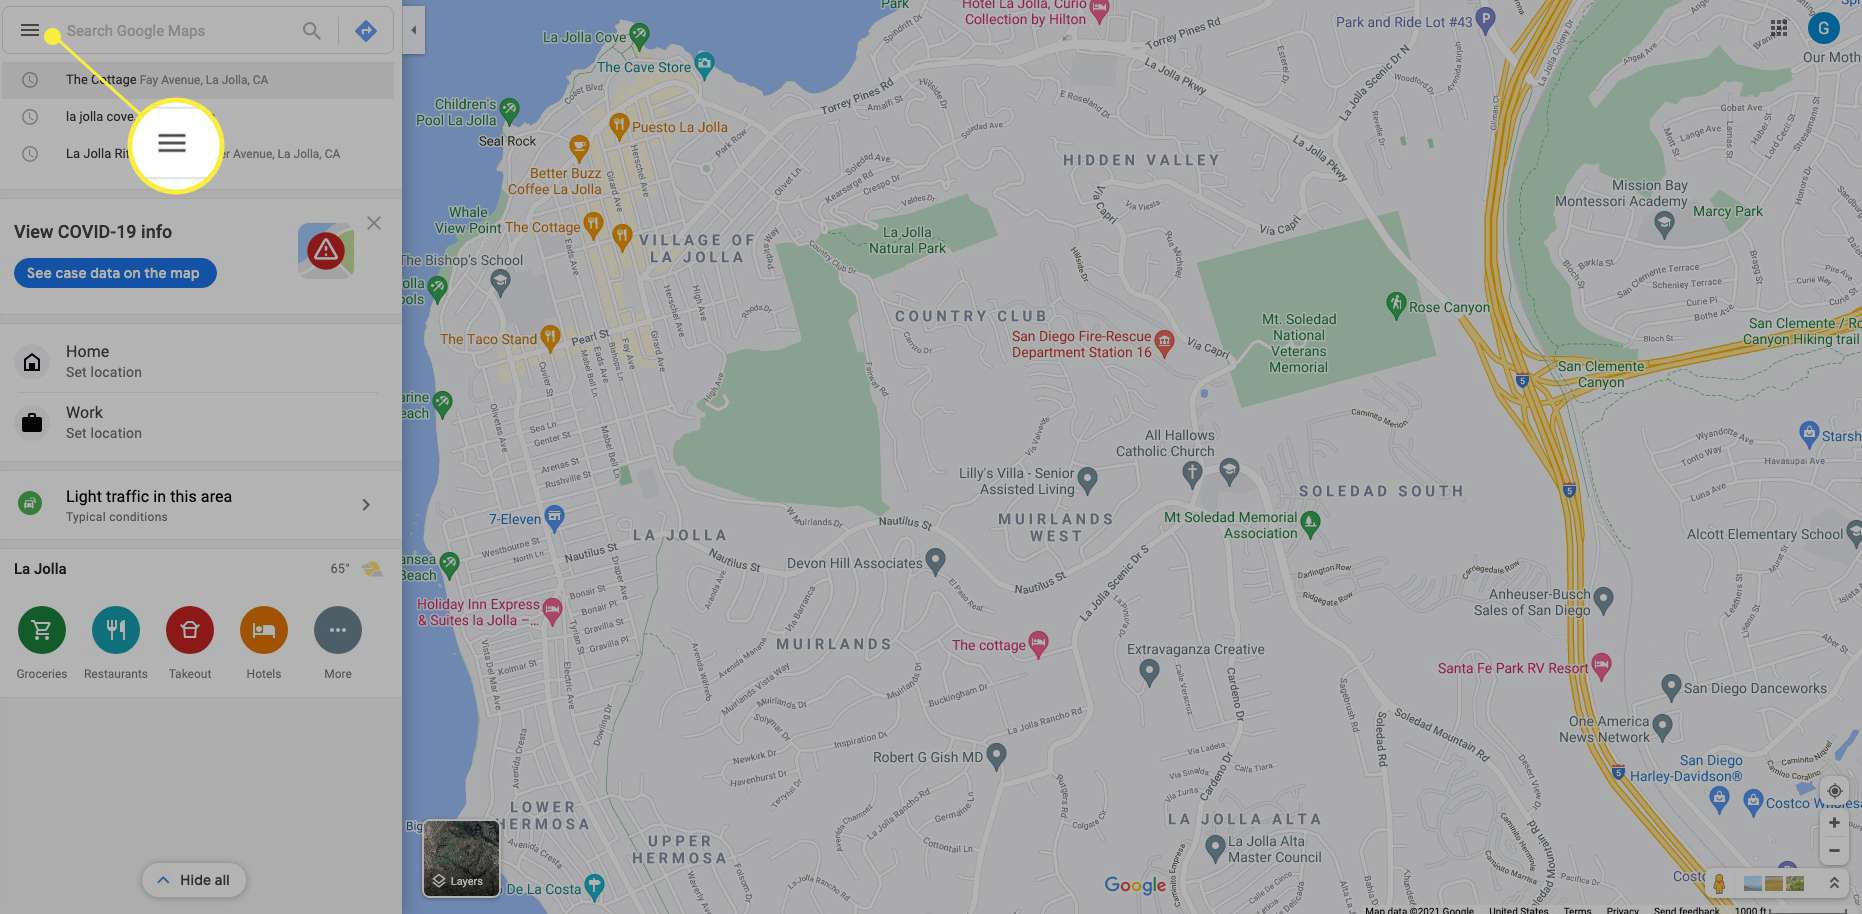 Mapy Google se zvýrazněnou ikonou Menu